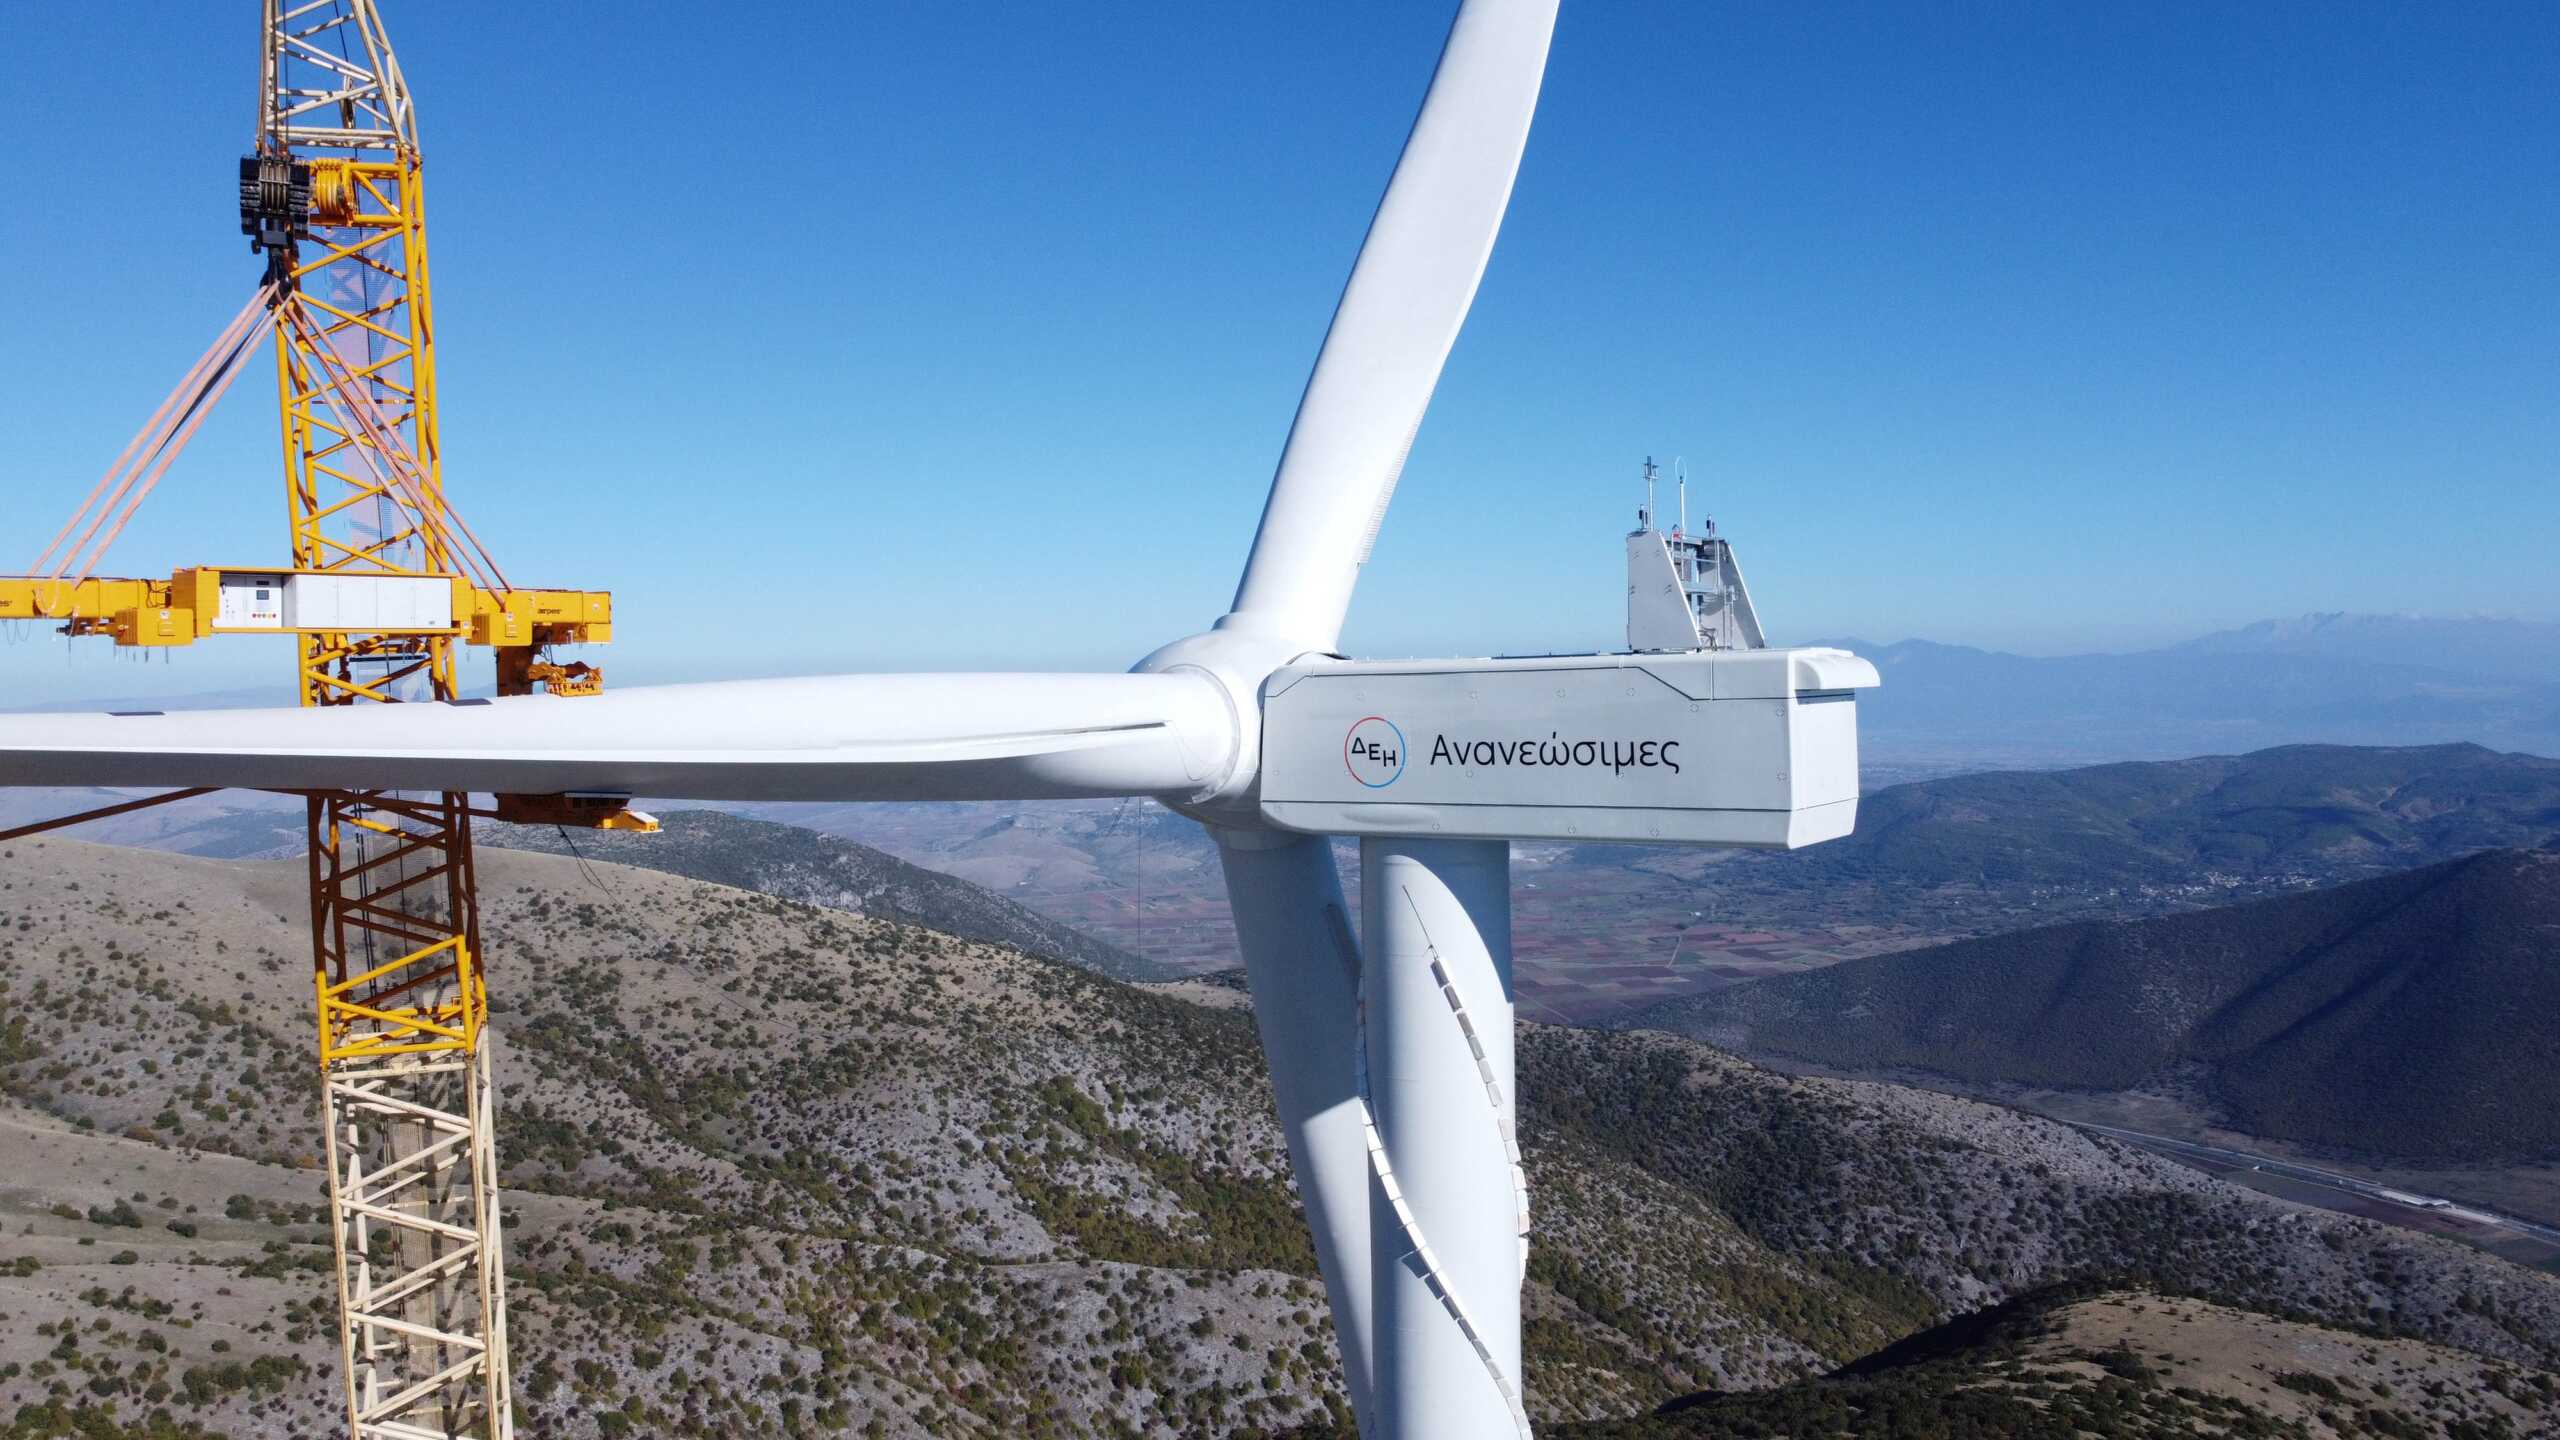 ΔΕΗ Ανανεώσιμες: Ολοκληρώθηκαν αιολικά πάρκα 40 MWστη Δυτική Μακεδονία